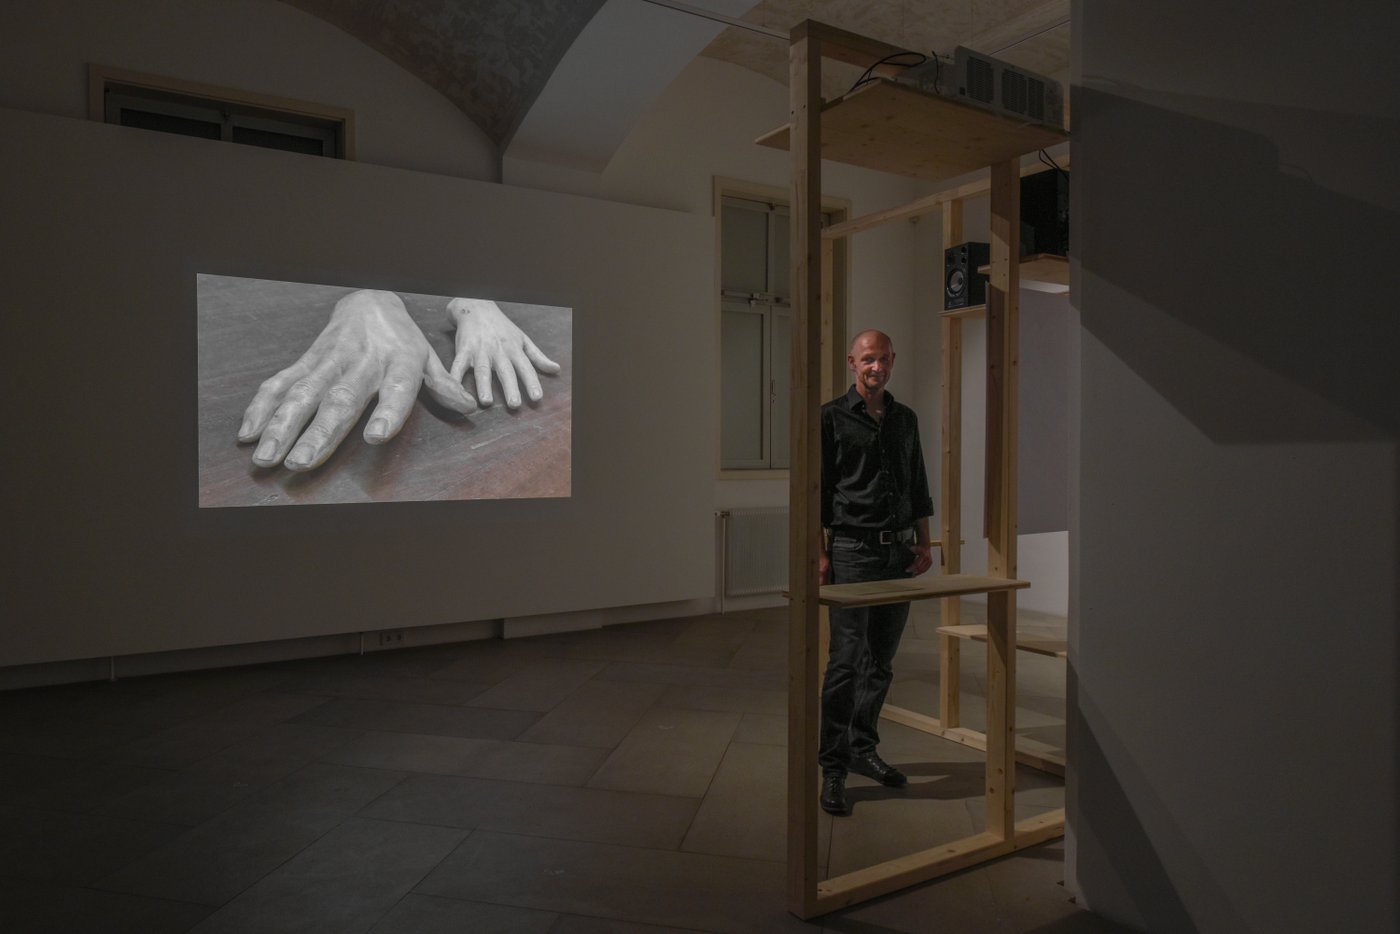 Der Künstler steht vor seiner Videoarbeit auf der man Hande sieht